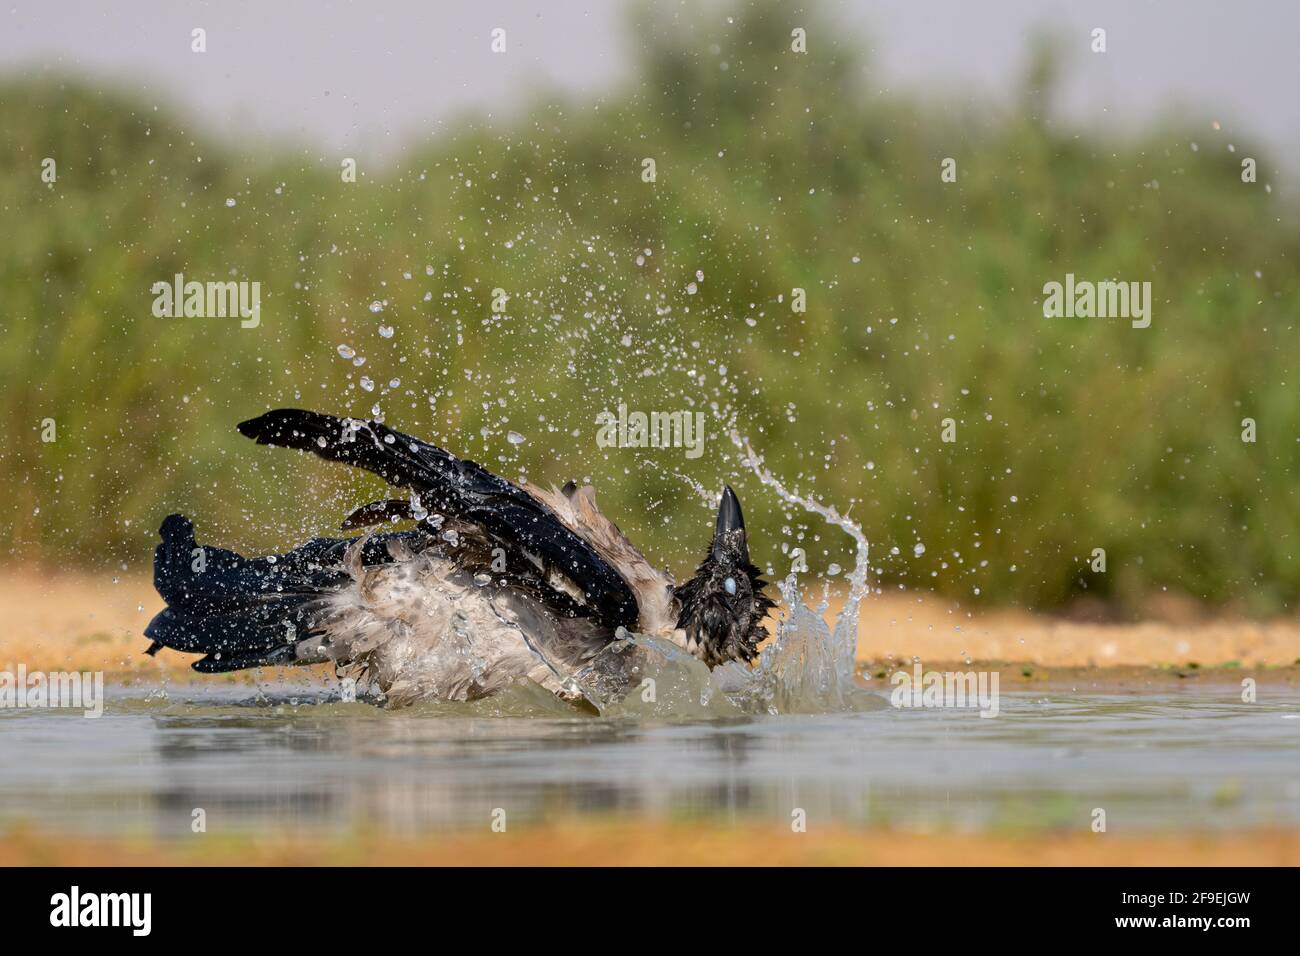 Corbeau à capuchon (Corvus cornix) près de l'eau le corbeau à capuchon est un oiseau répandu dans une grande partie de l'Europe et du Moyen-Orient. C'est un omnivore s. Banque D'Images